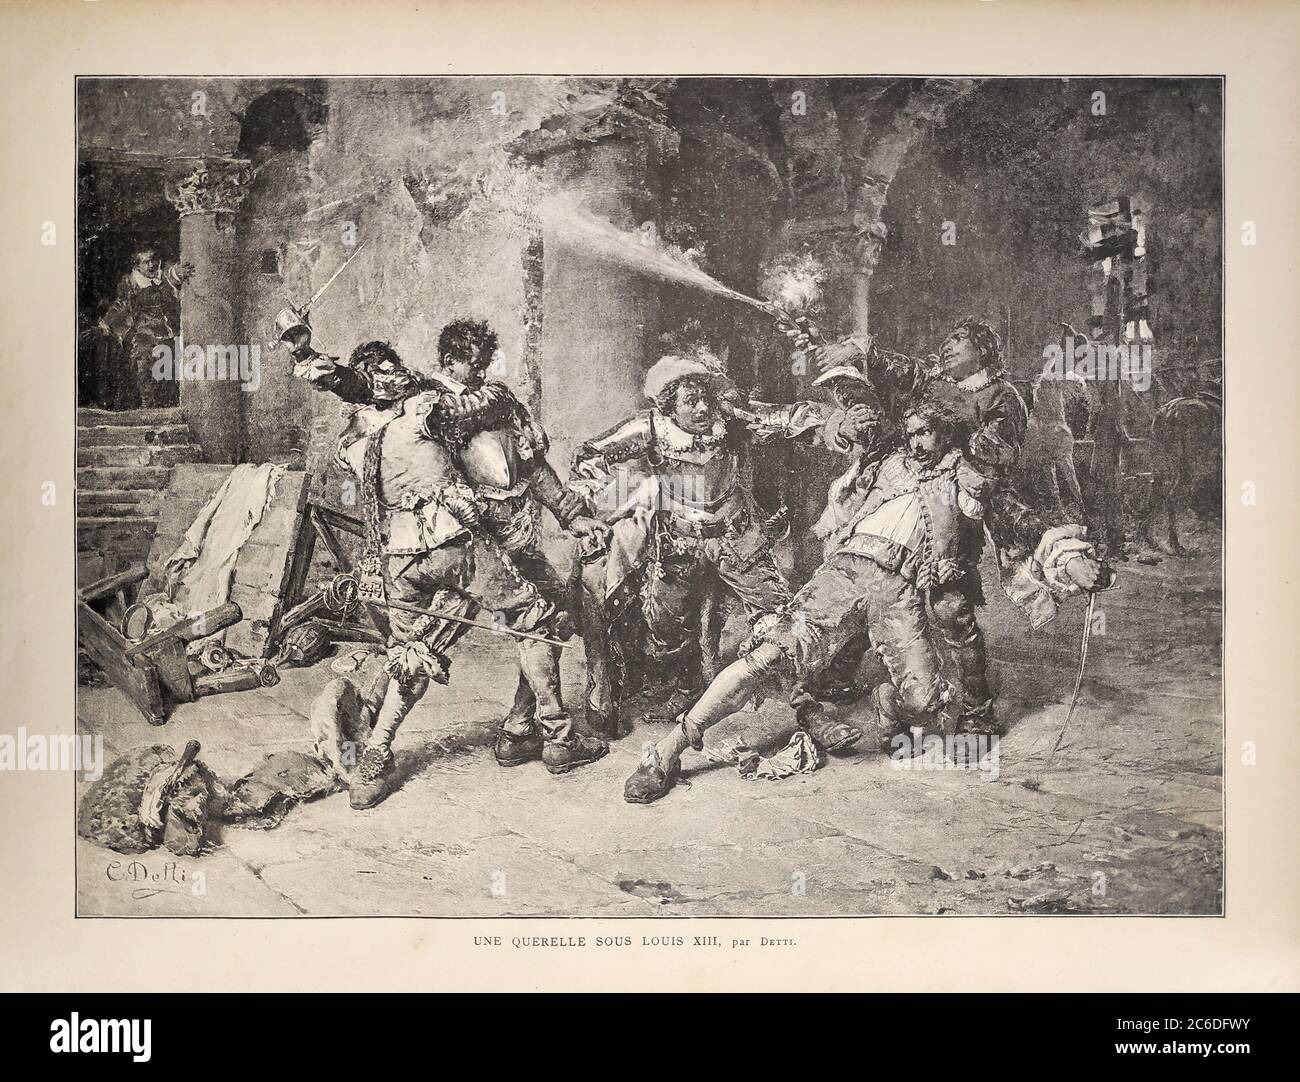 Ilustración de una pelea entre hombres titulada 'une querelle sous Louis XIII' de Cesare Detti publicado en 1885 en la revista mensual 'Paris illustrr Foto de stock